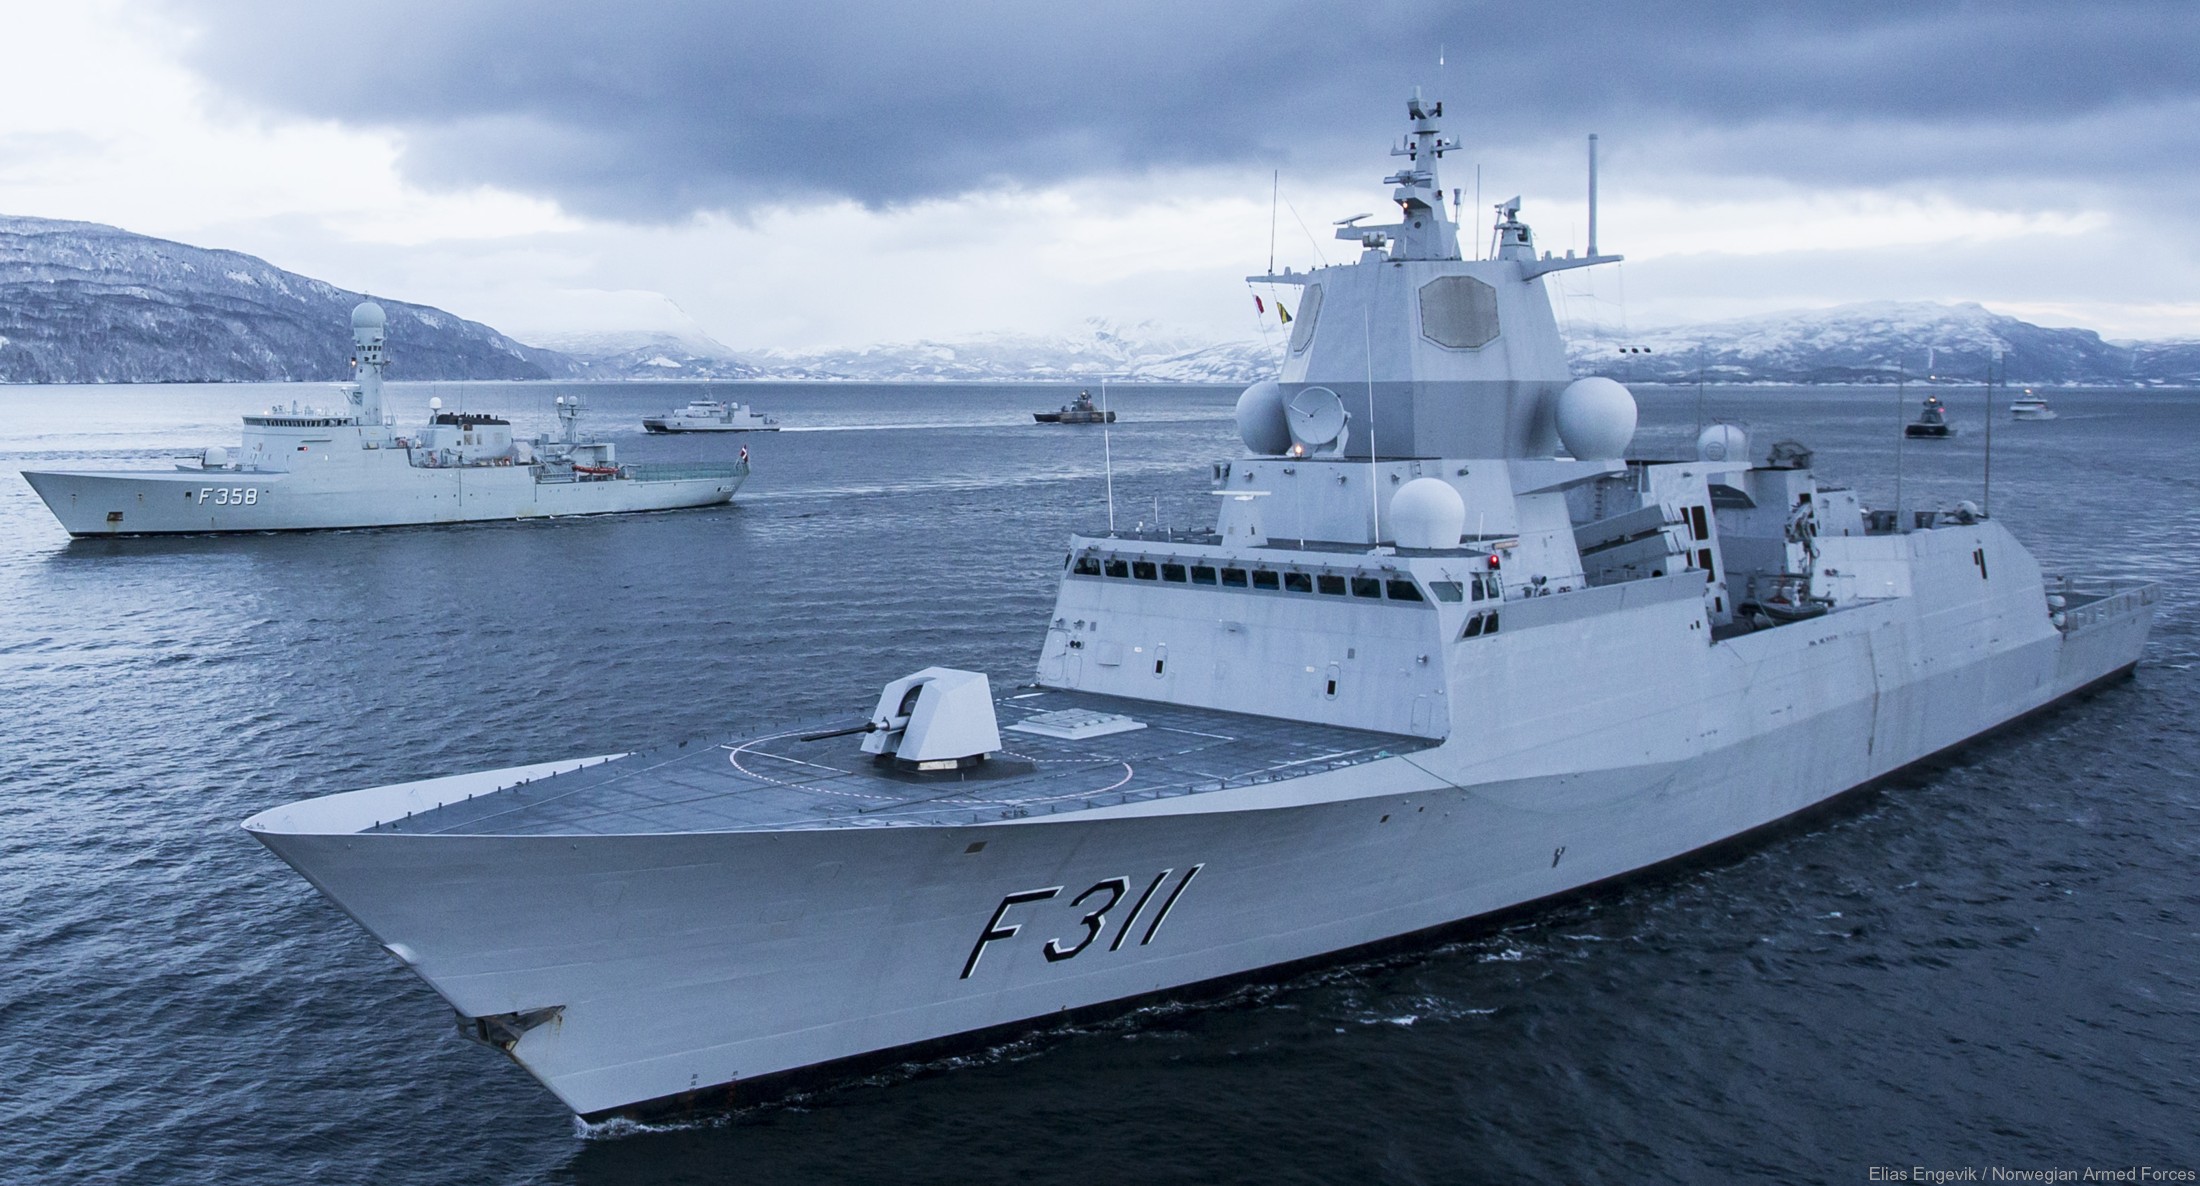 f-311 hnoms roald amundsen knm nansen class frigate royal norwegian navy sjoforsvaret 05